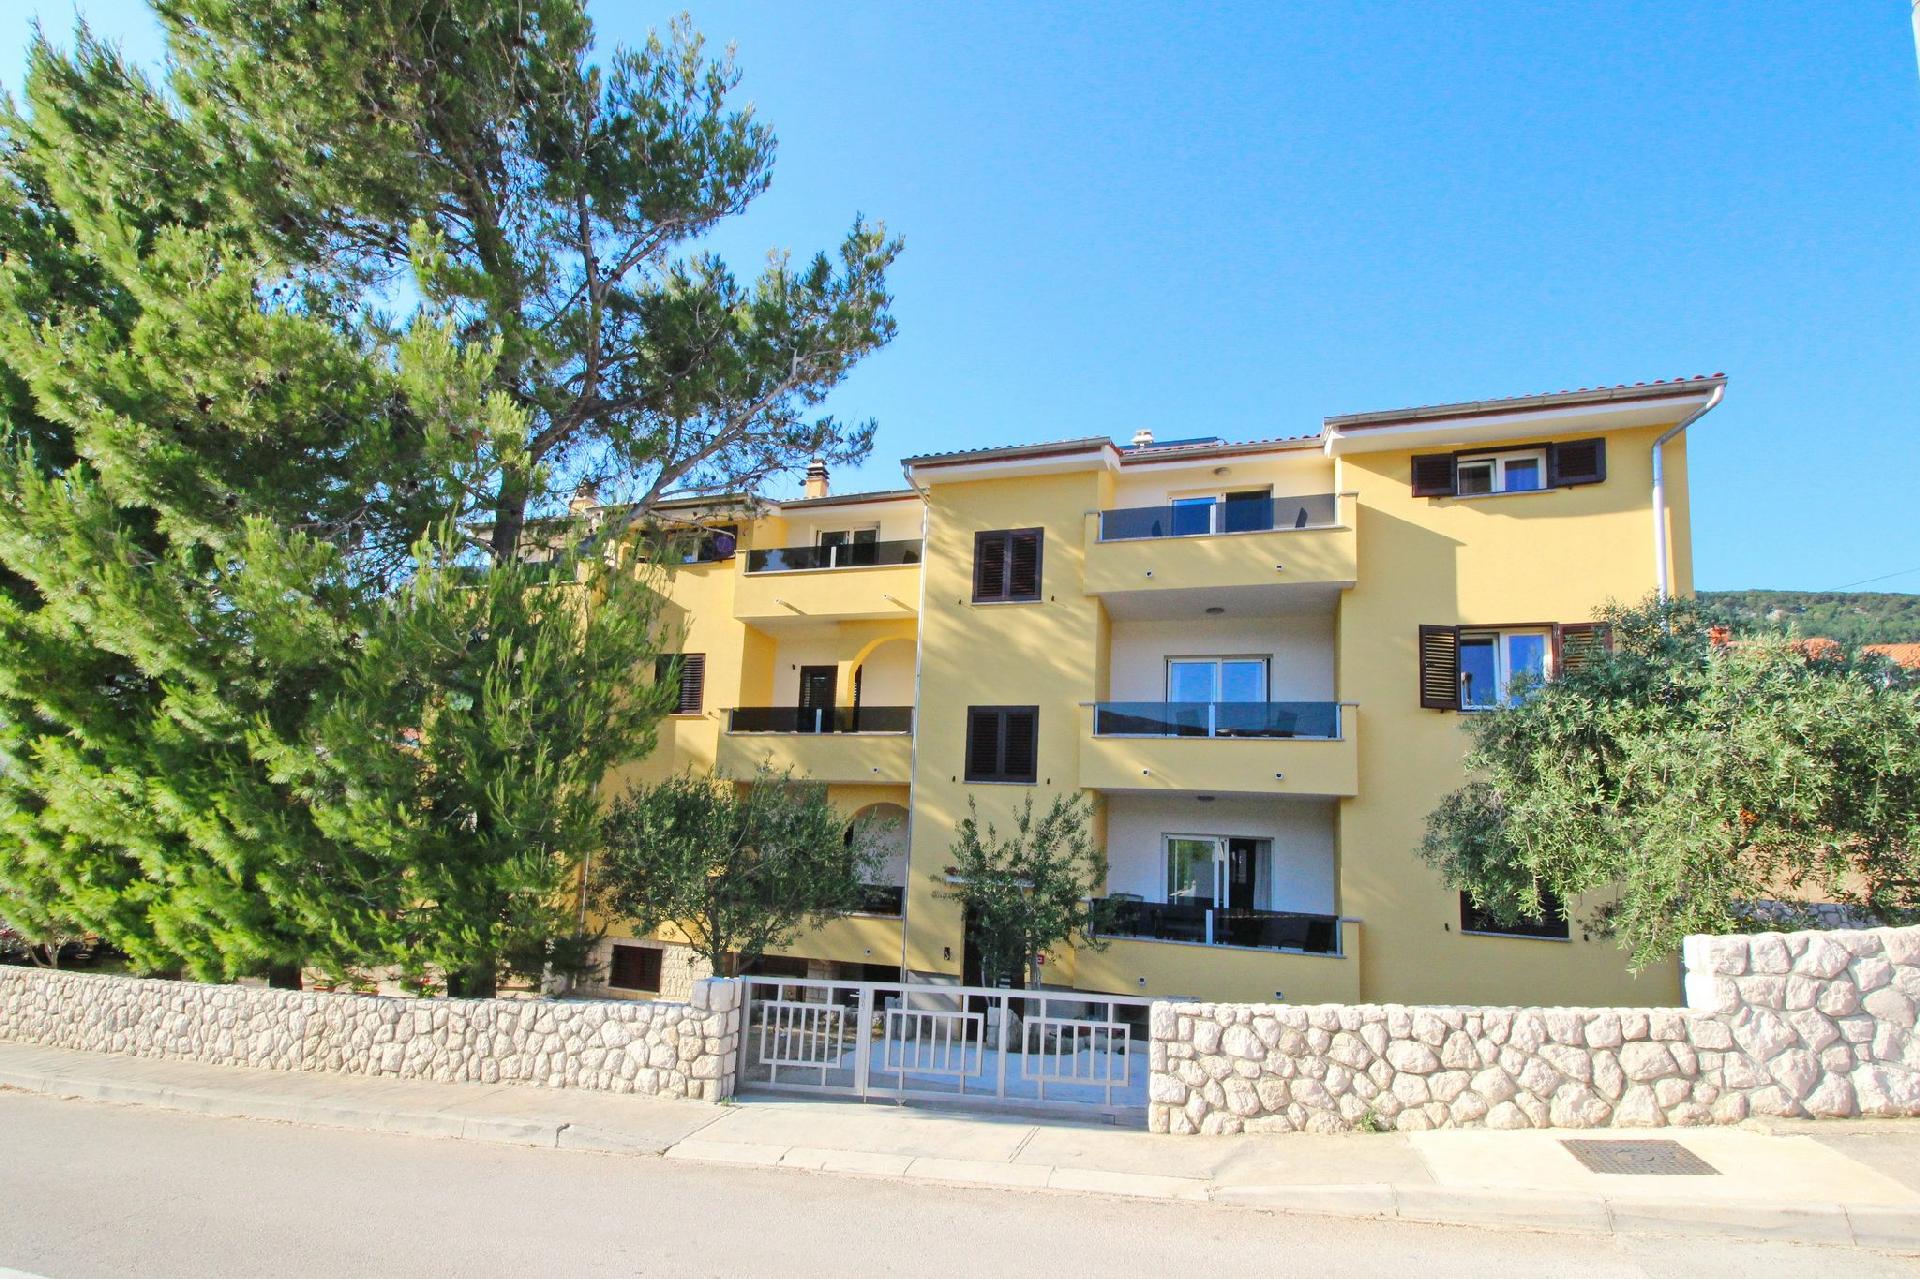 Ferienwohnung für 3 Personen ca. 32 m² i  in Kroatien